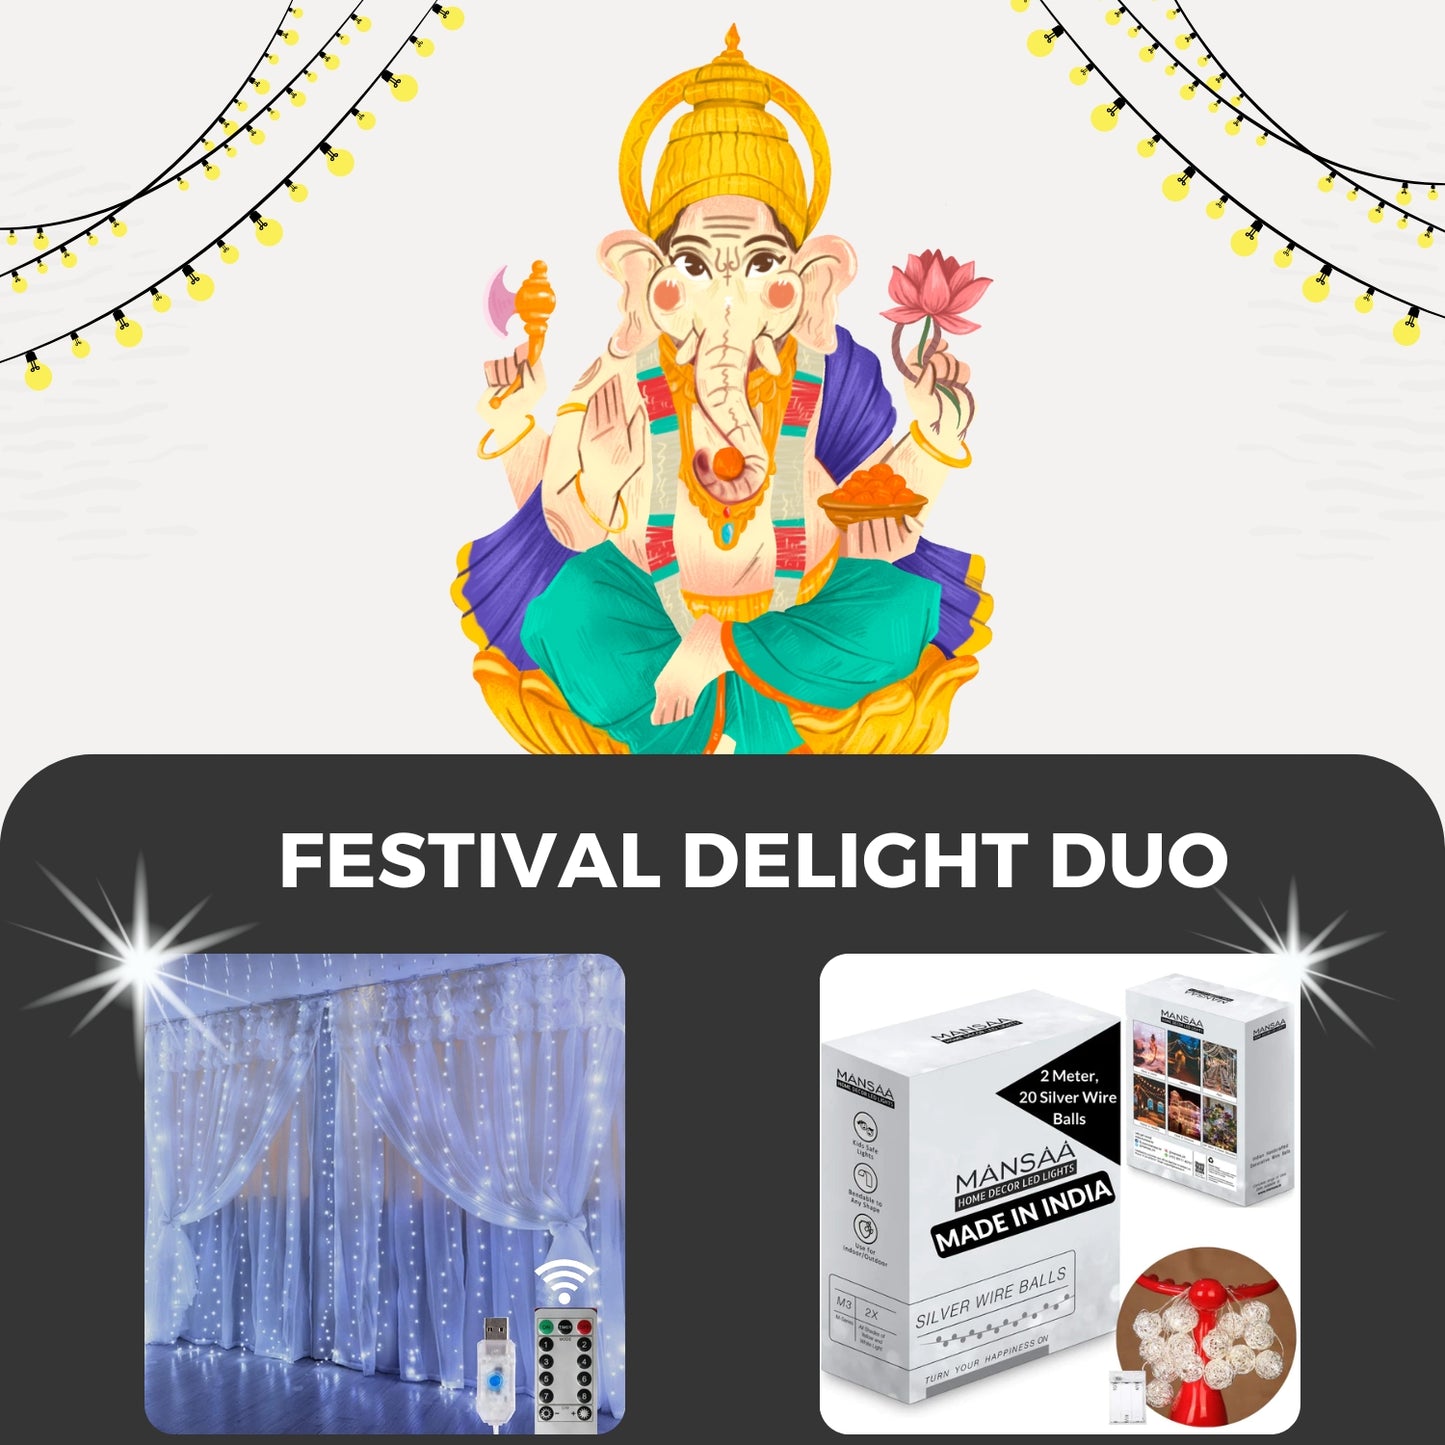 Festival Delight Duo